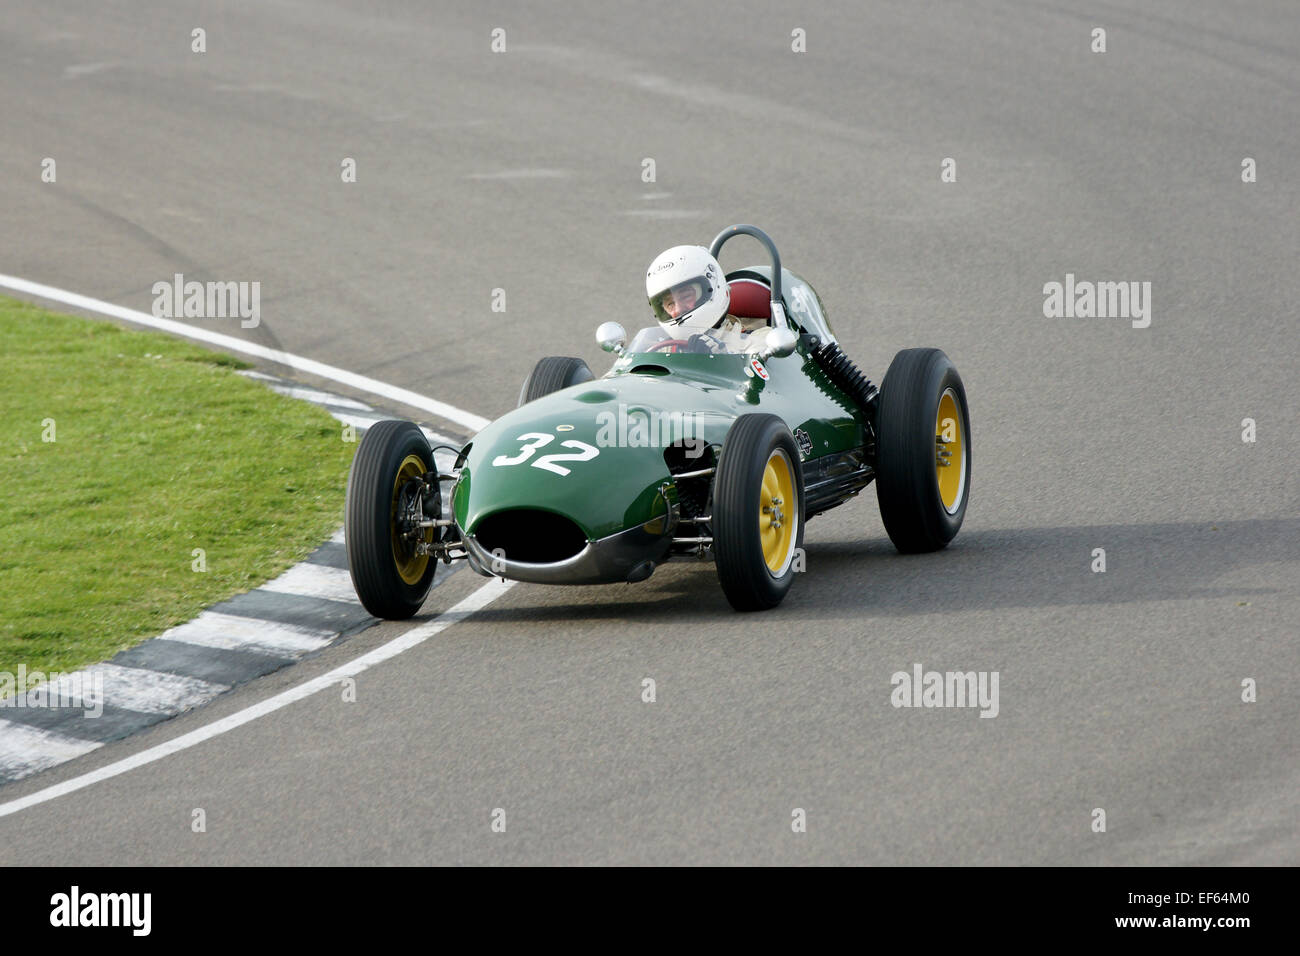 Lotus-Climax 16 Racing Car Stock Photo